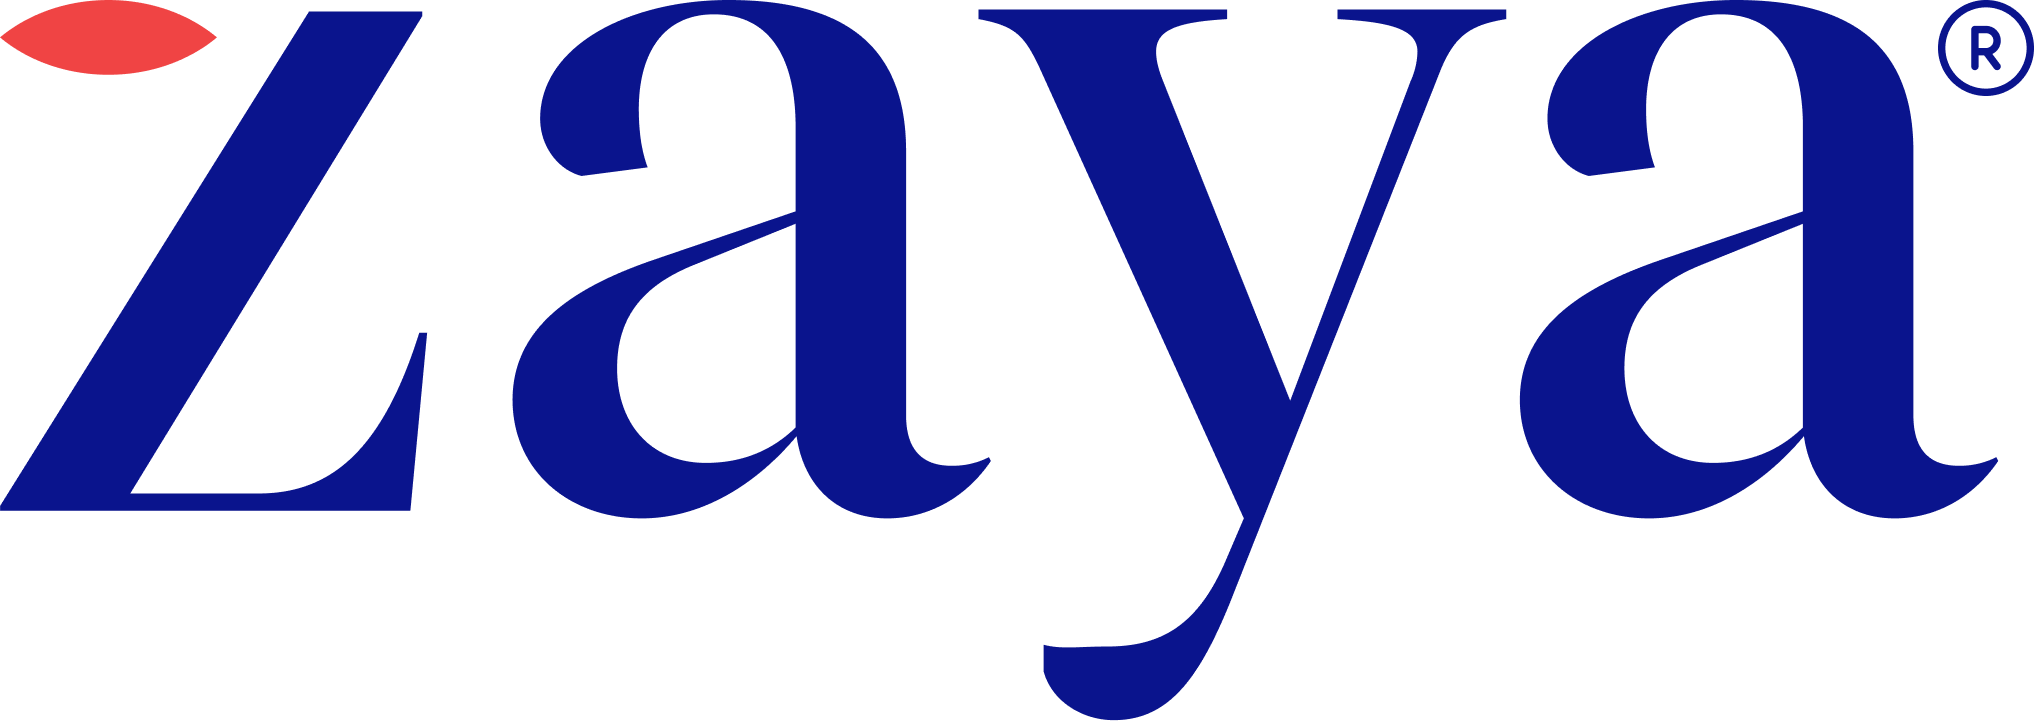 Zaya Care logo